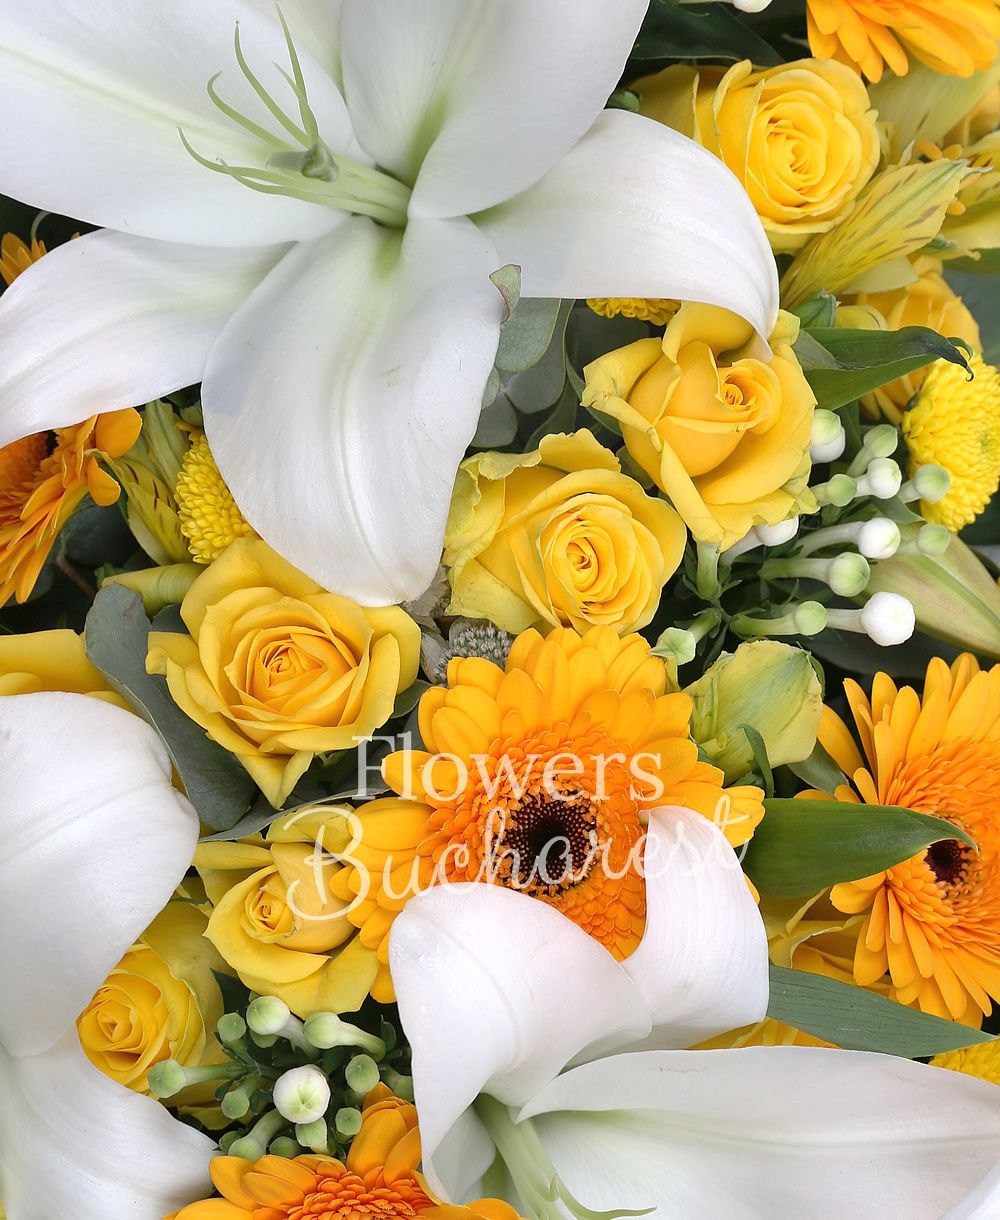 10 yellow roses, 2 white lilies, 10 yellow gerbera, 10 white bouvardia, 5 yellow miniroses, 5 yellow santini, 3 yellow alstroemeria, white asparagus, greenery